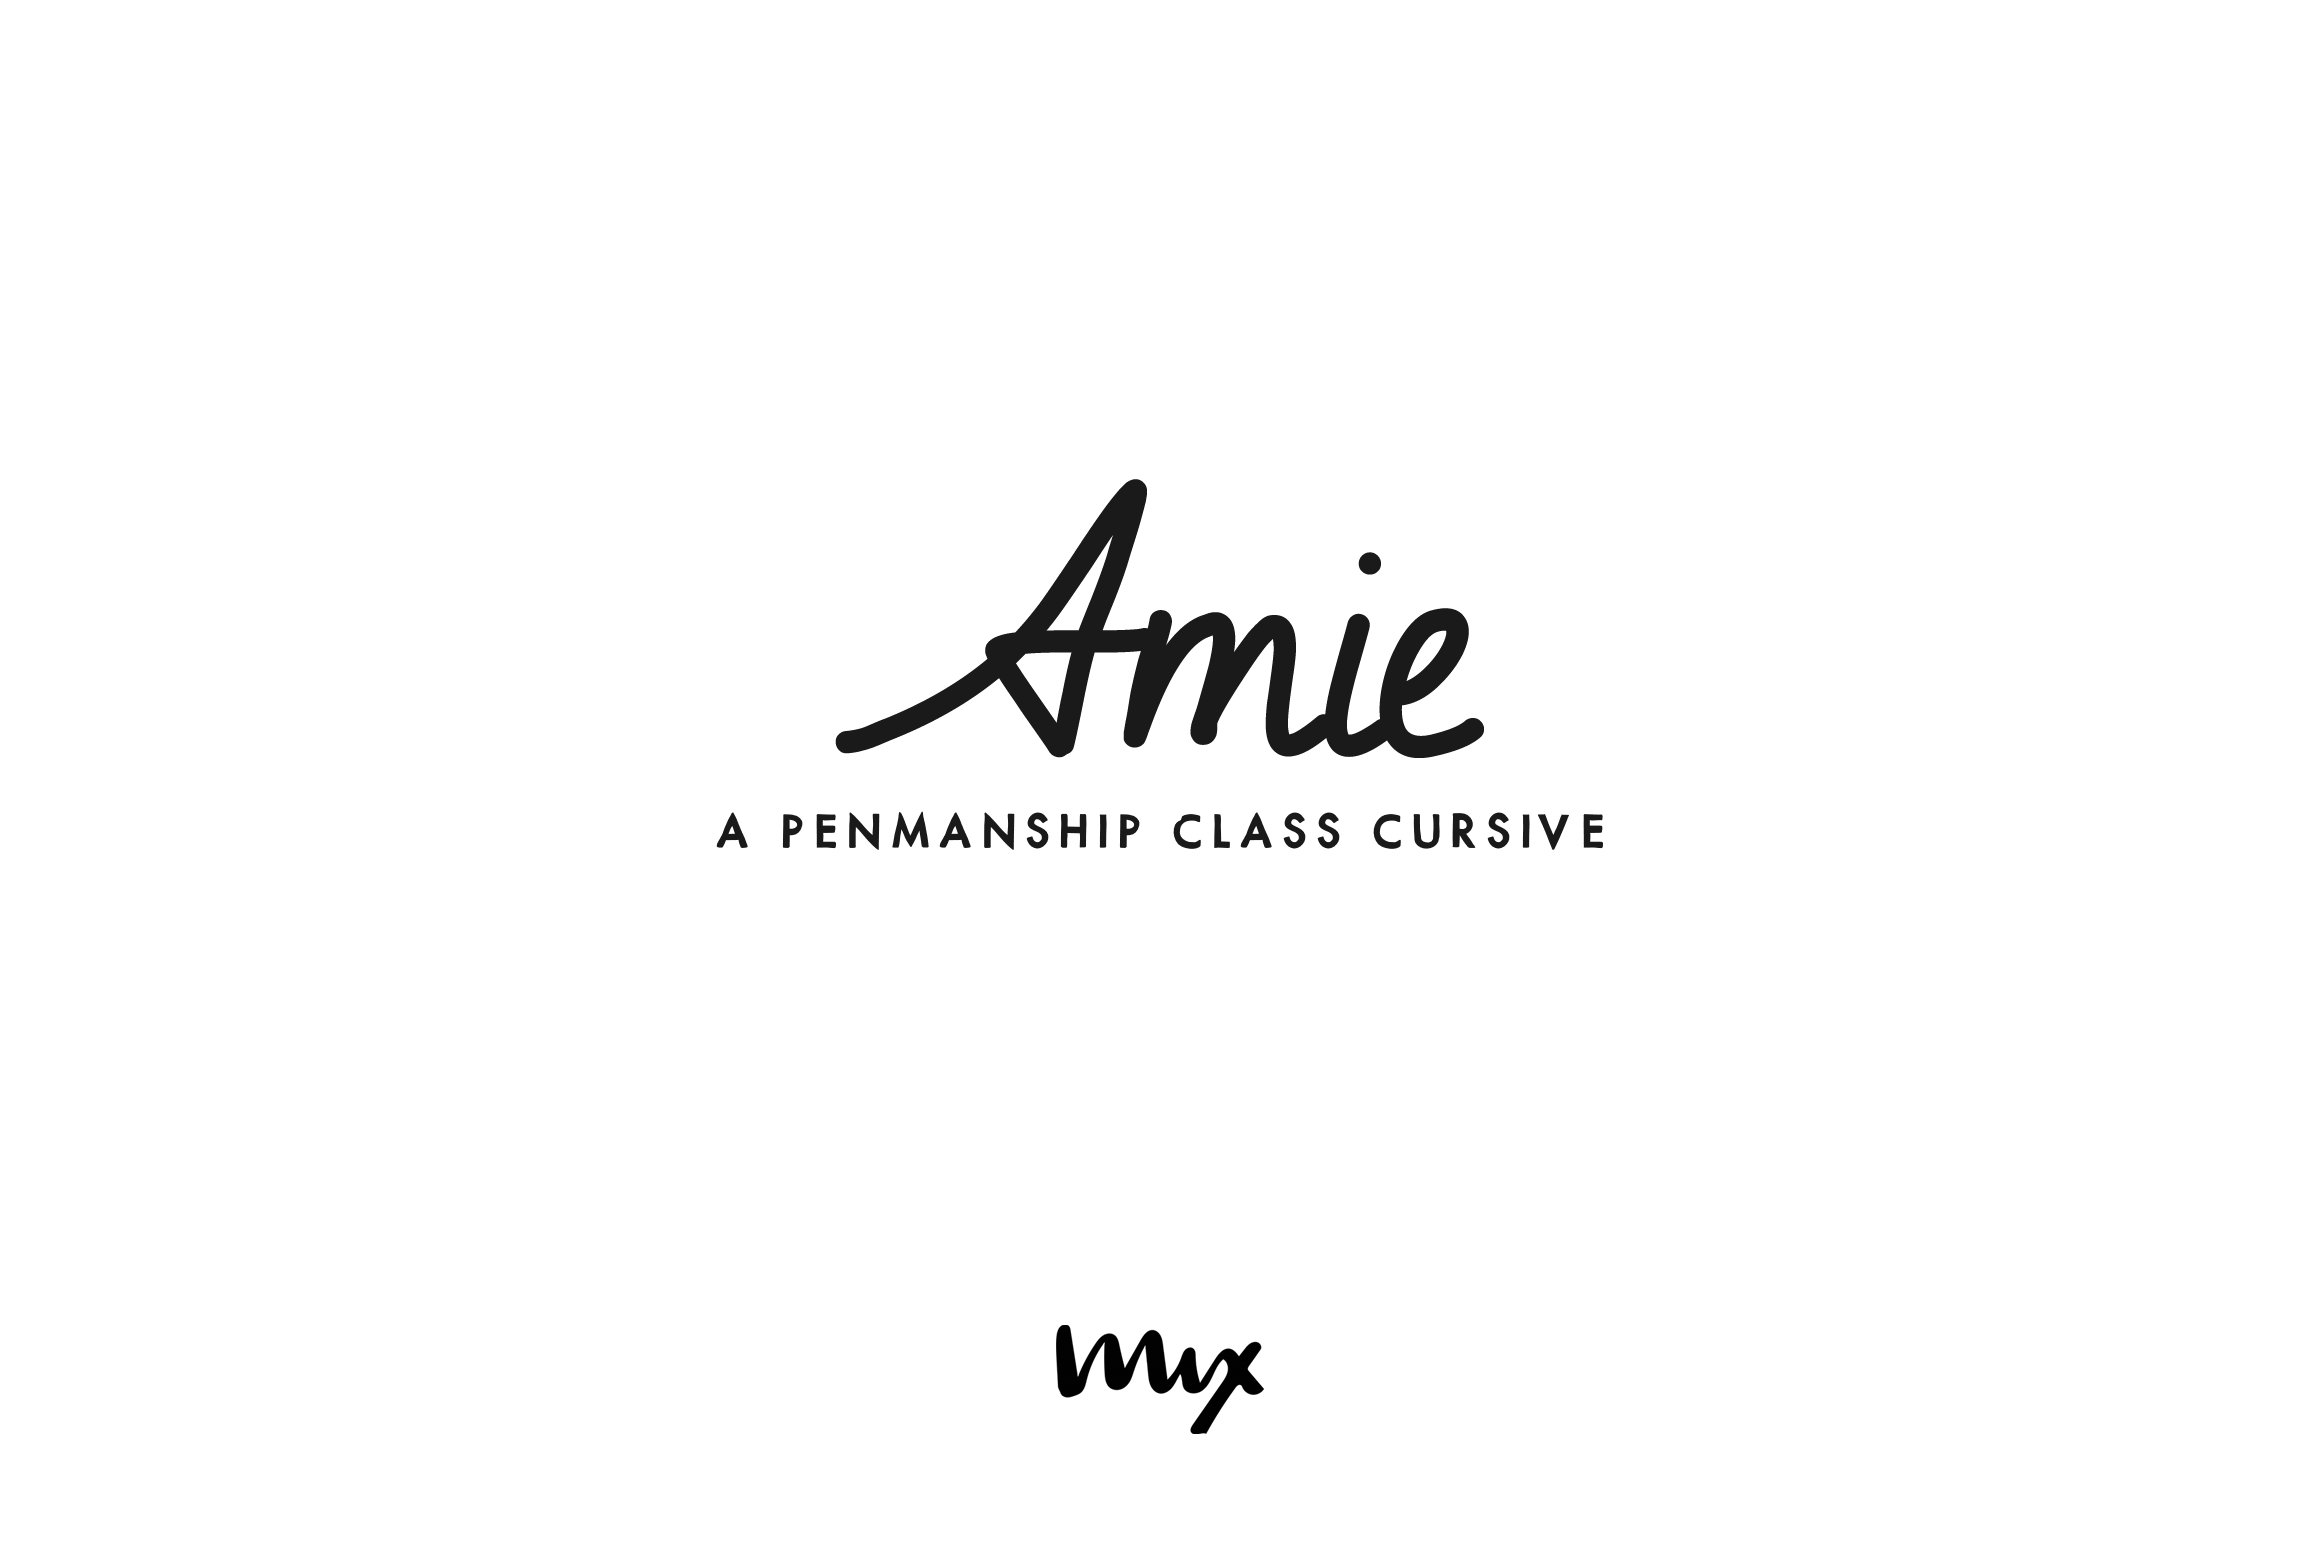 Amie — A Penmanship Class Cursive cover image.